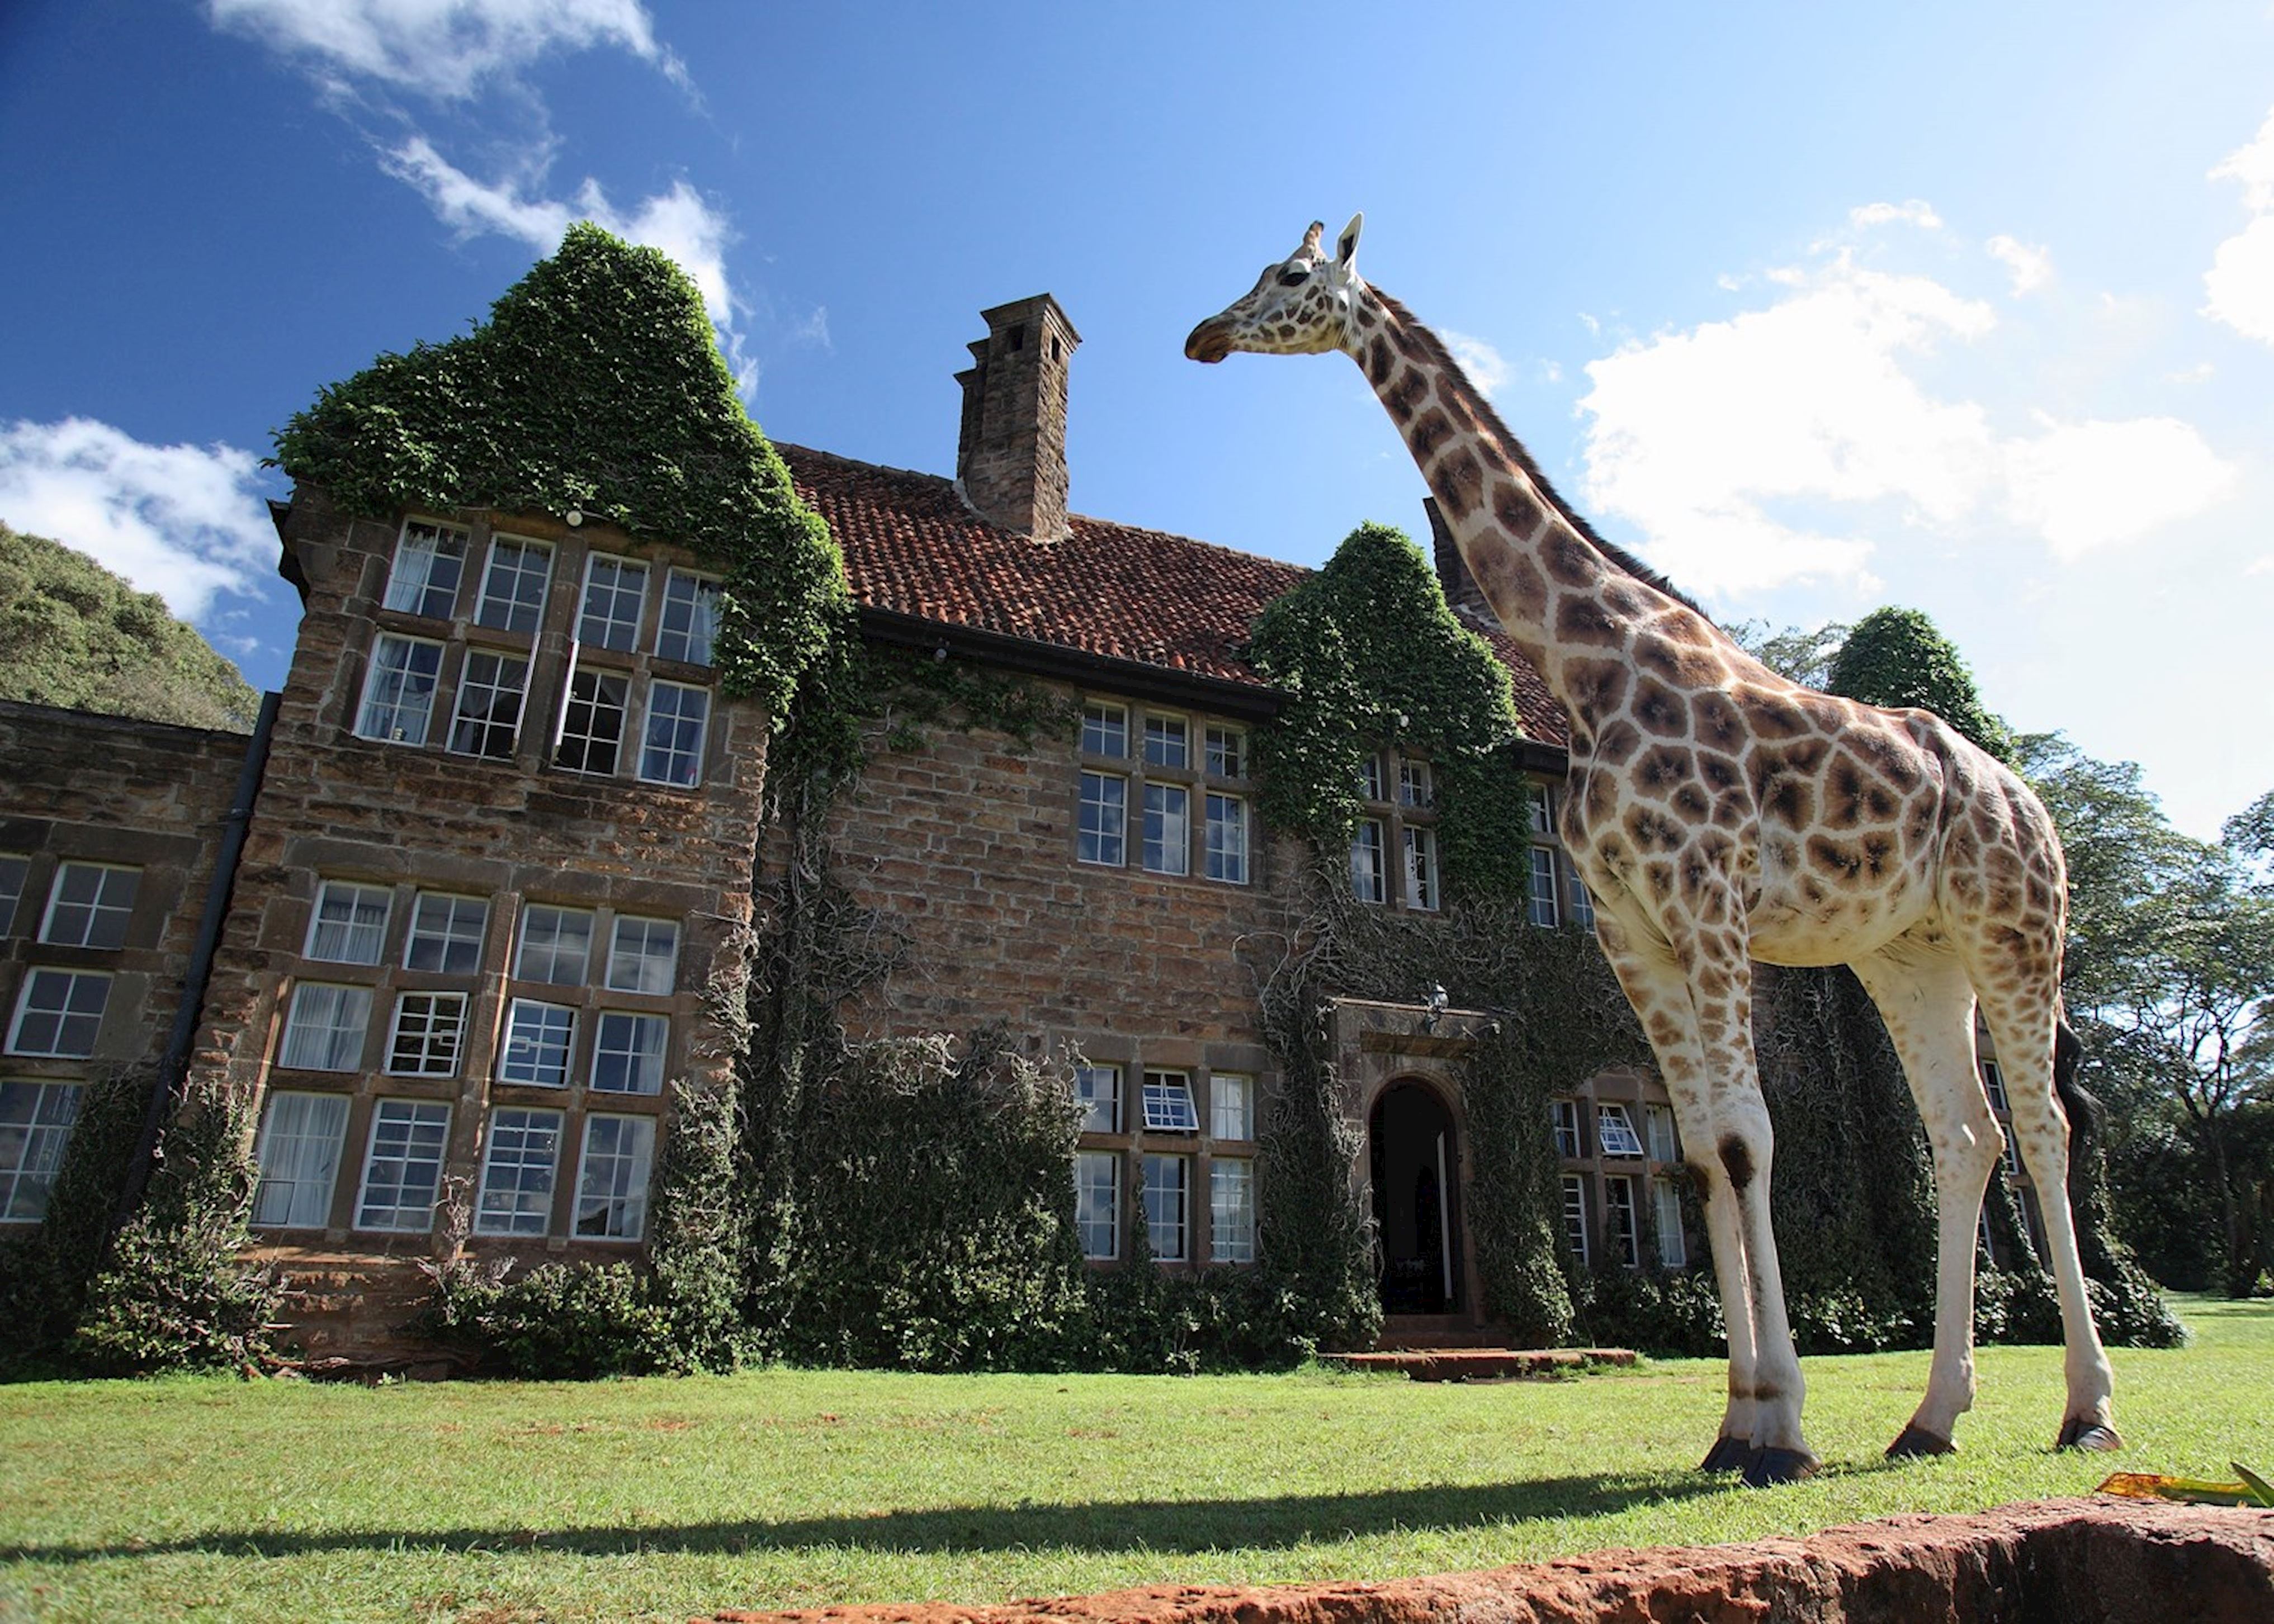 safari giraffe manor